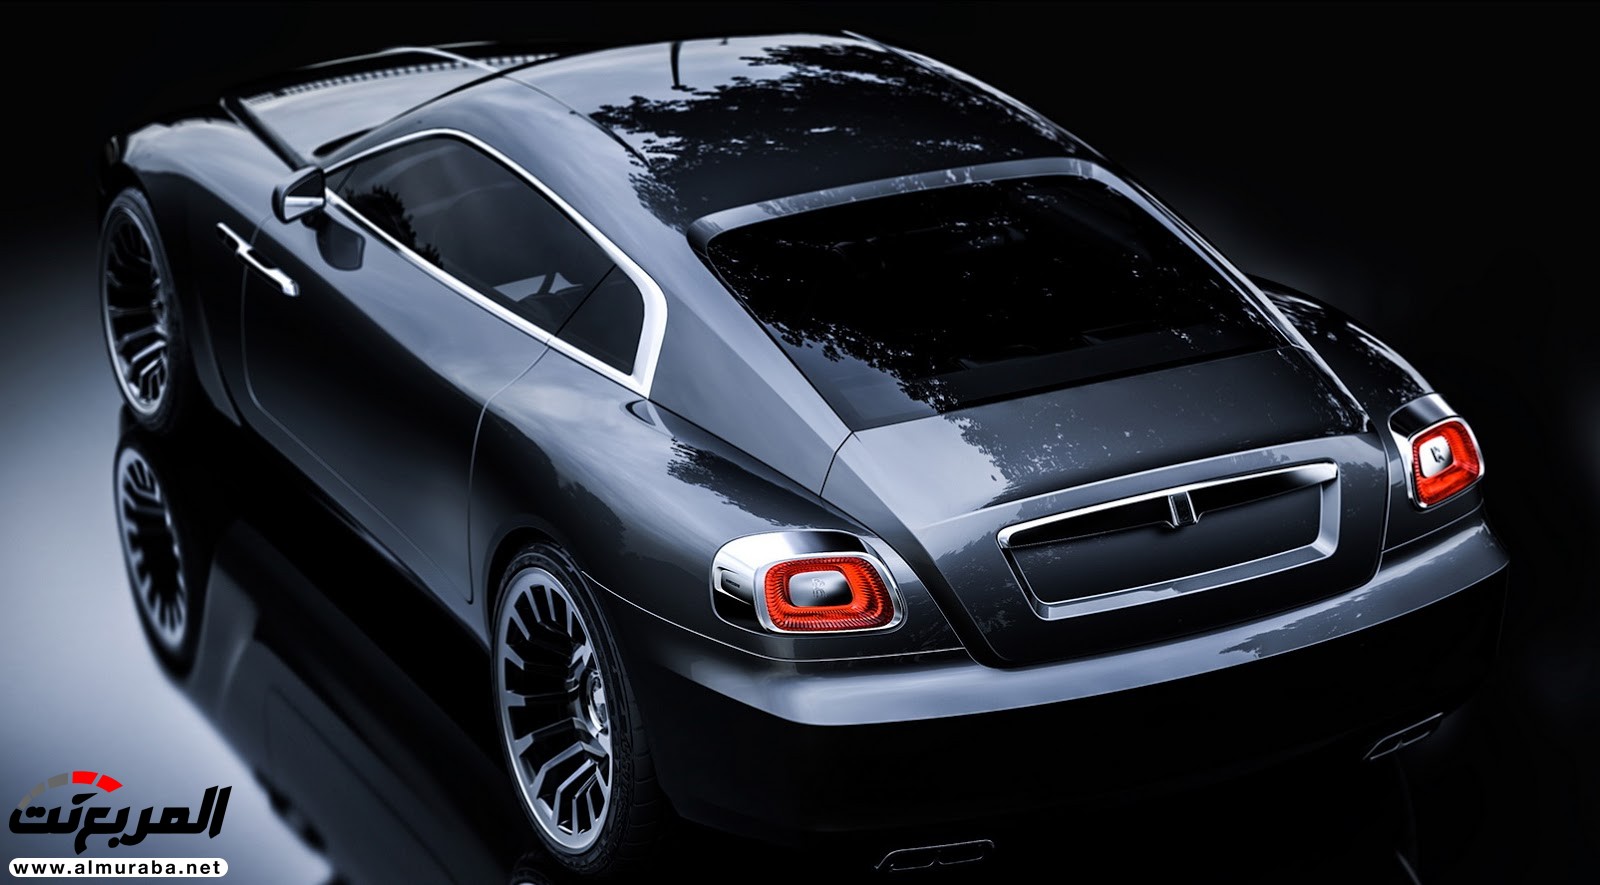 "صور افتراضية" لما يمكن أن تبدو عليه "رولز رويس" رايث كوبيه 2020 Rolls-Royce Wraith Coupe 66